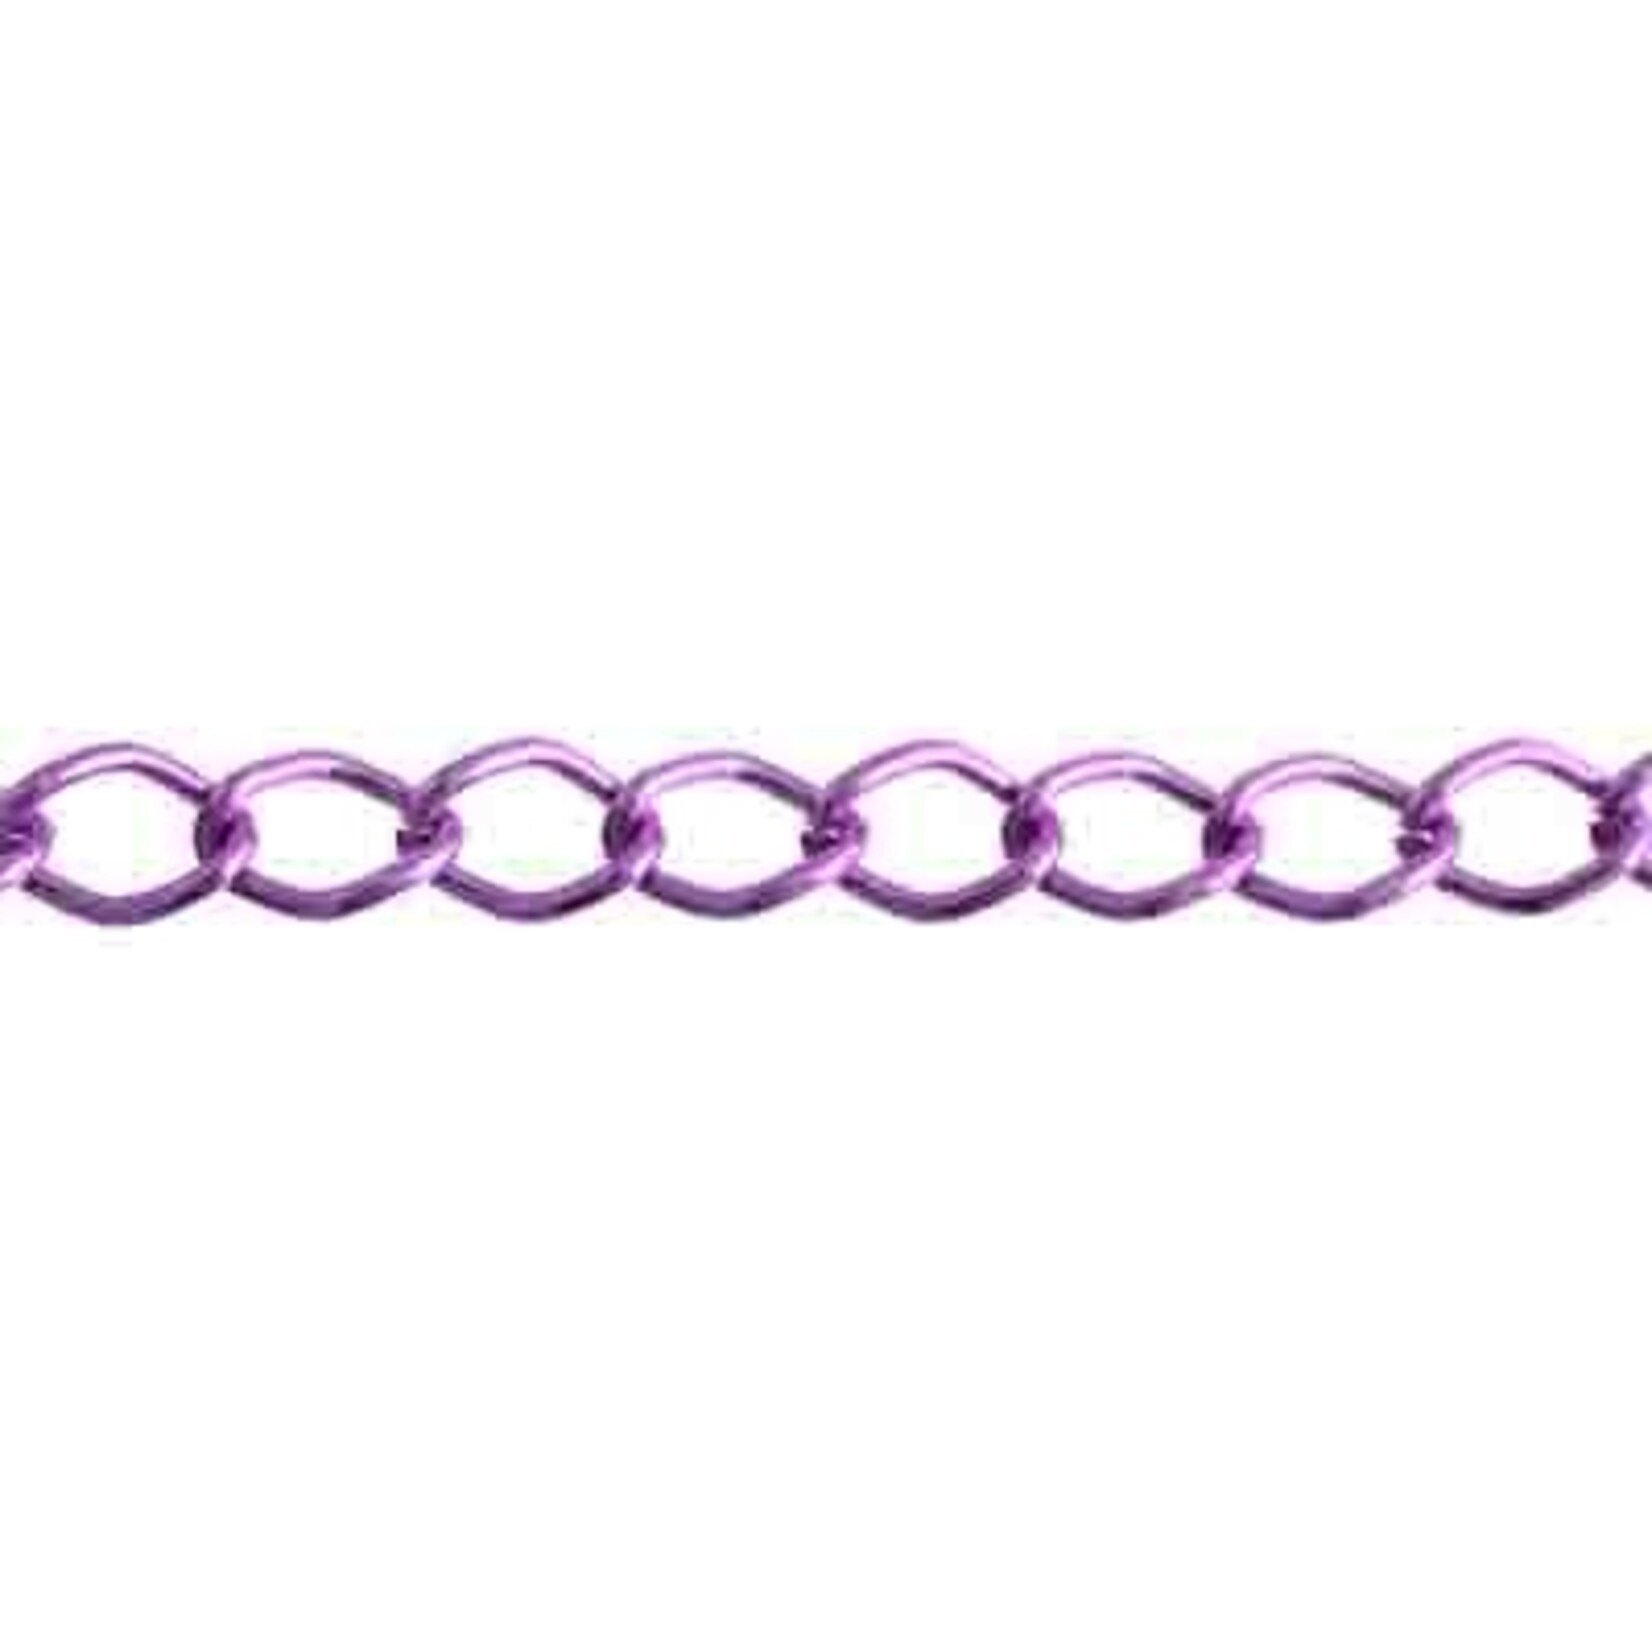 Aluminum Chain 50m/spool Purple 11 x 8mm